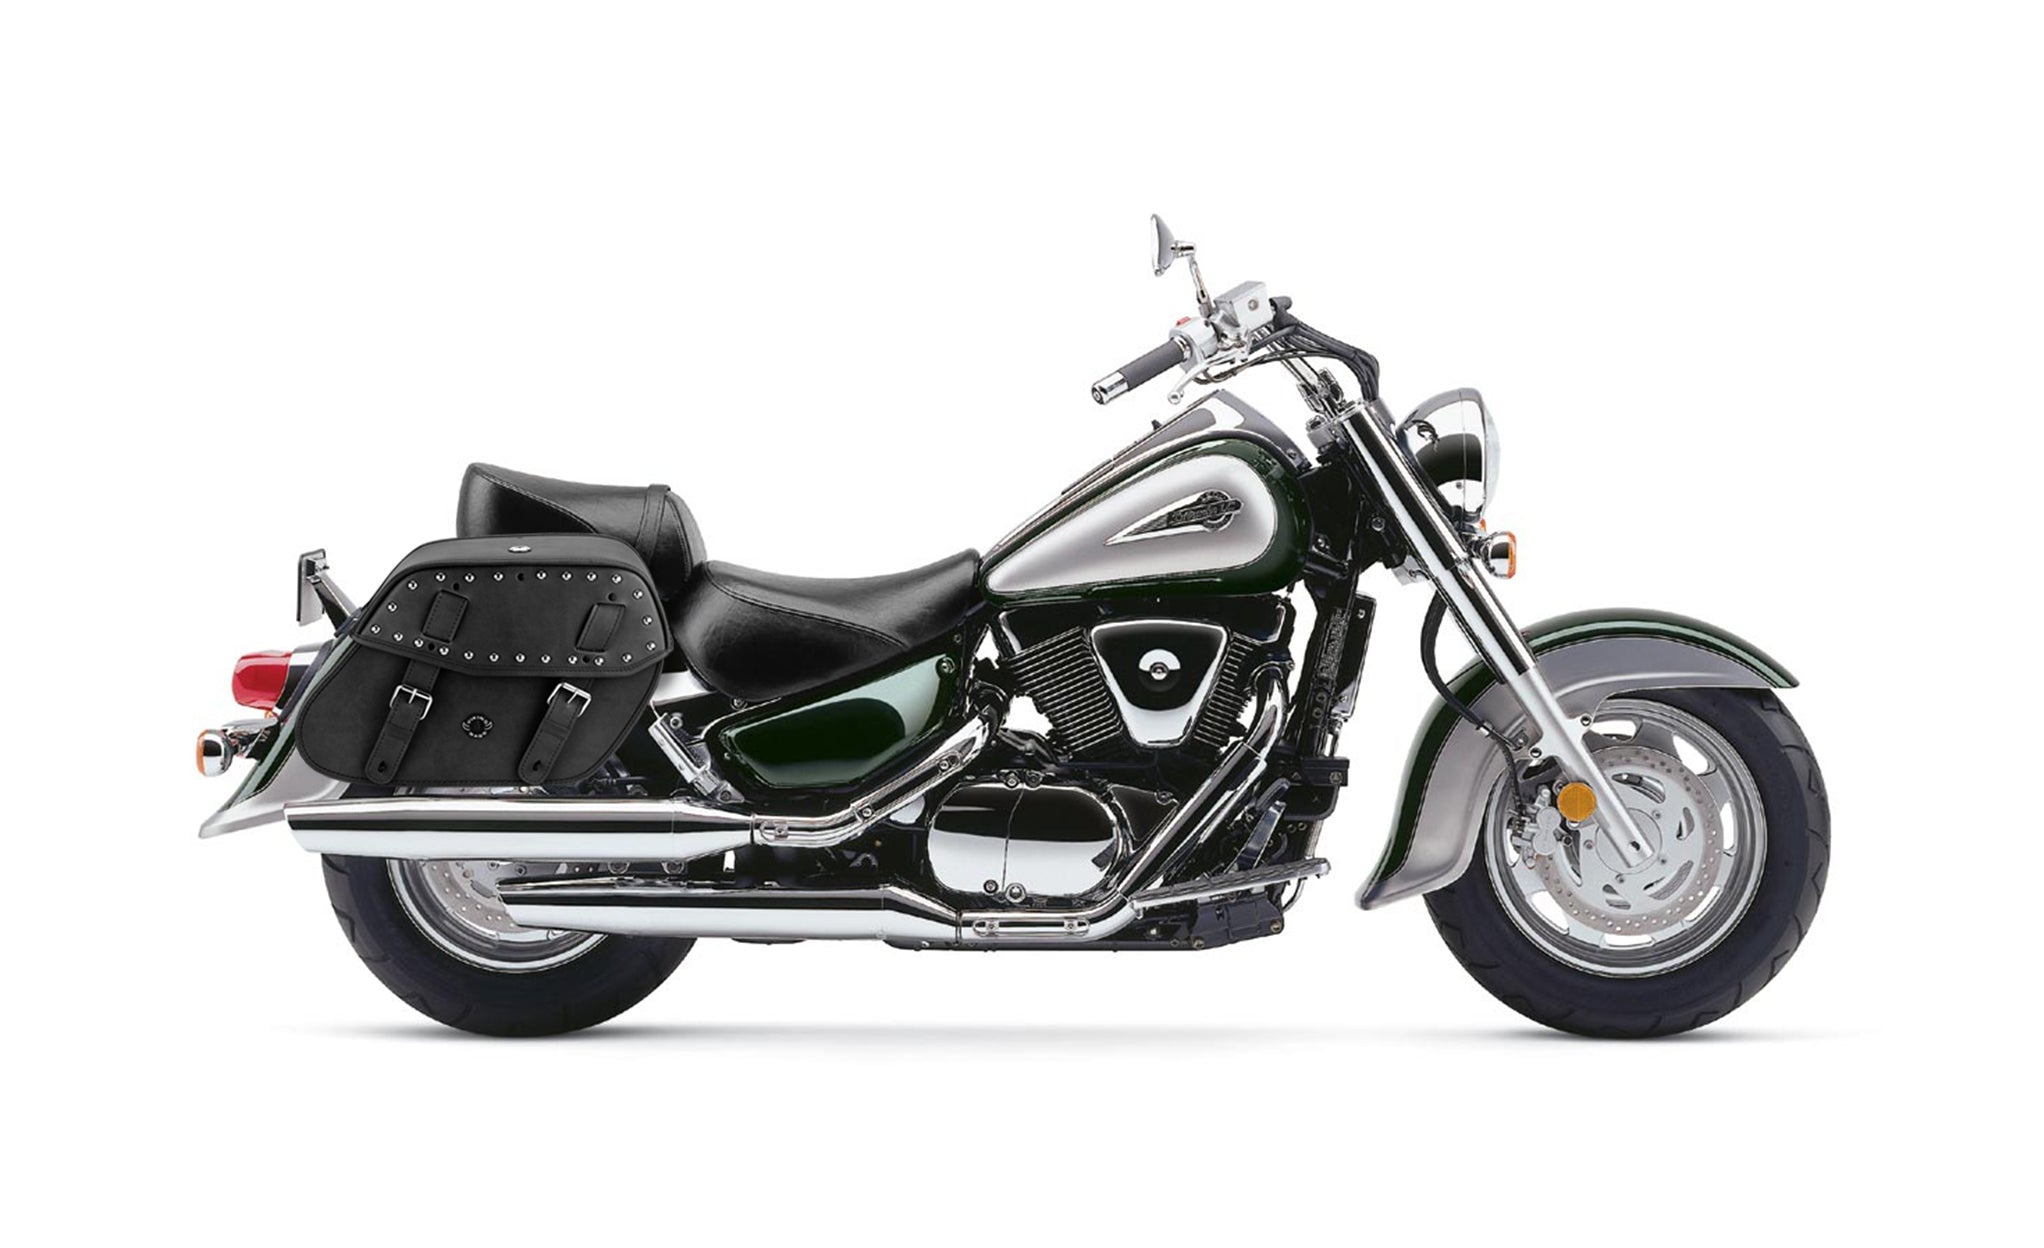 Viking Odin Large Suzuki Intruder 1500 Vl1500 Leather Studded Motorcycle Saddlebags on Bike Photo @expand